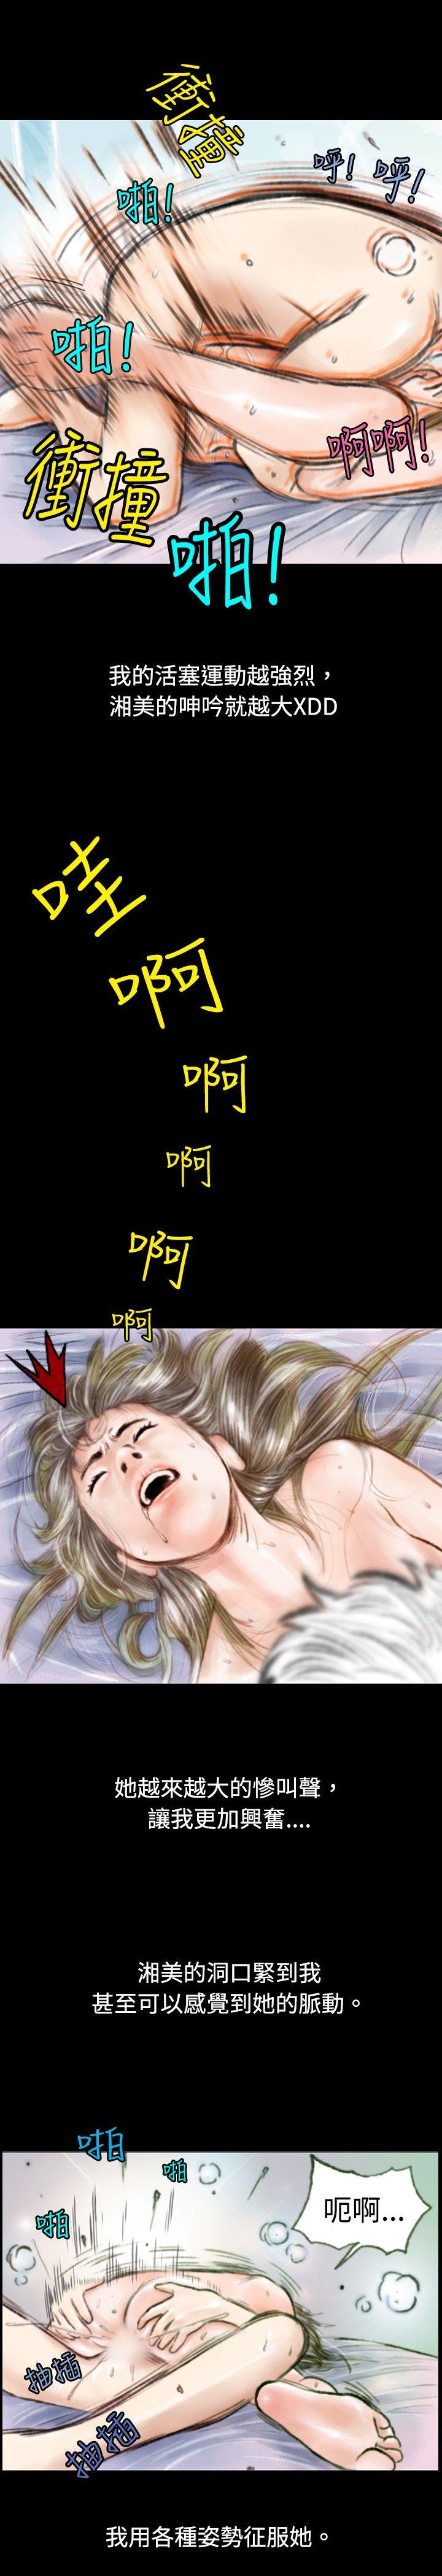 韩国污漫画 秘密Story 危险关係(下) 11